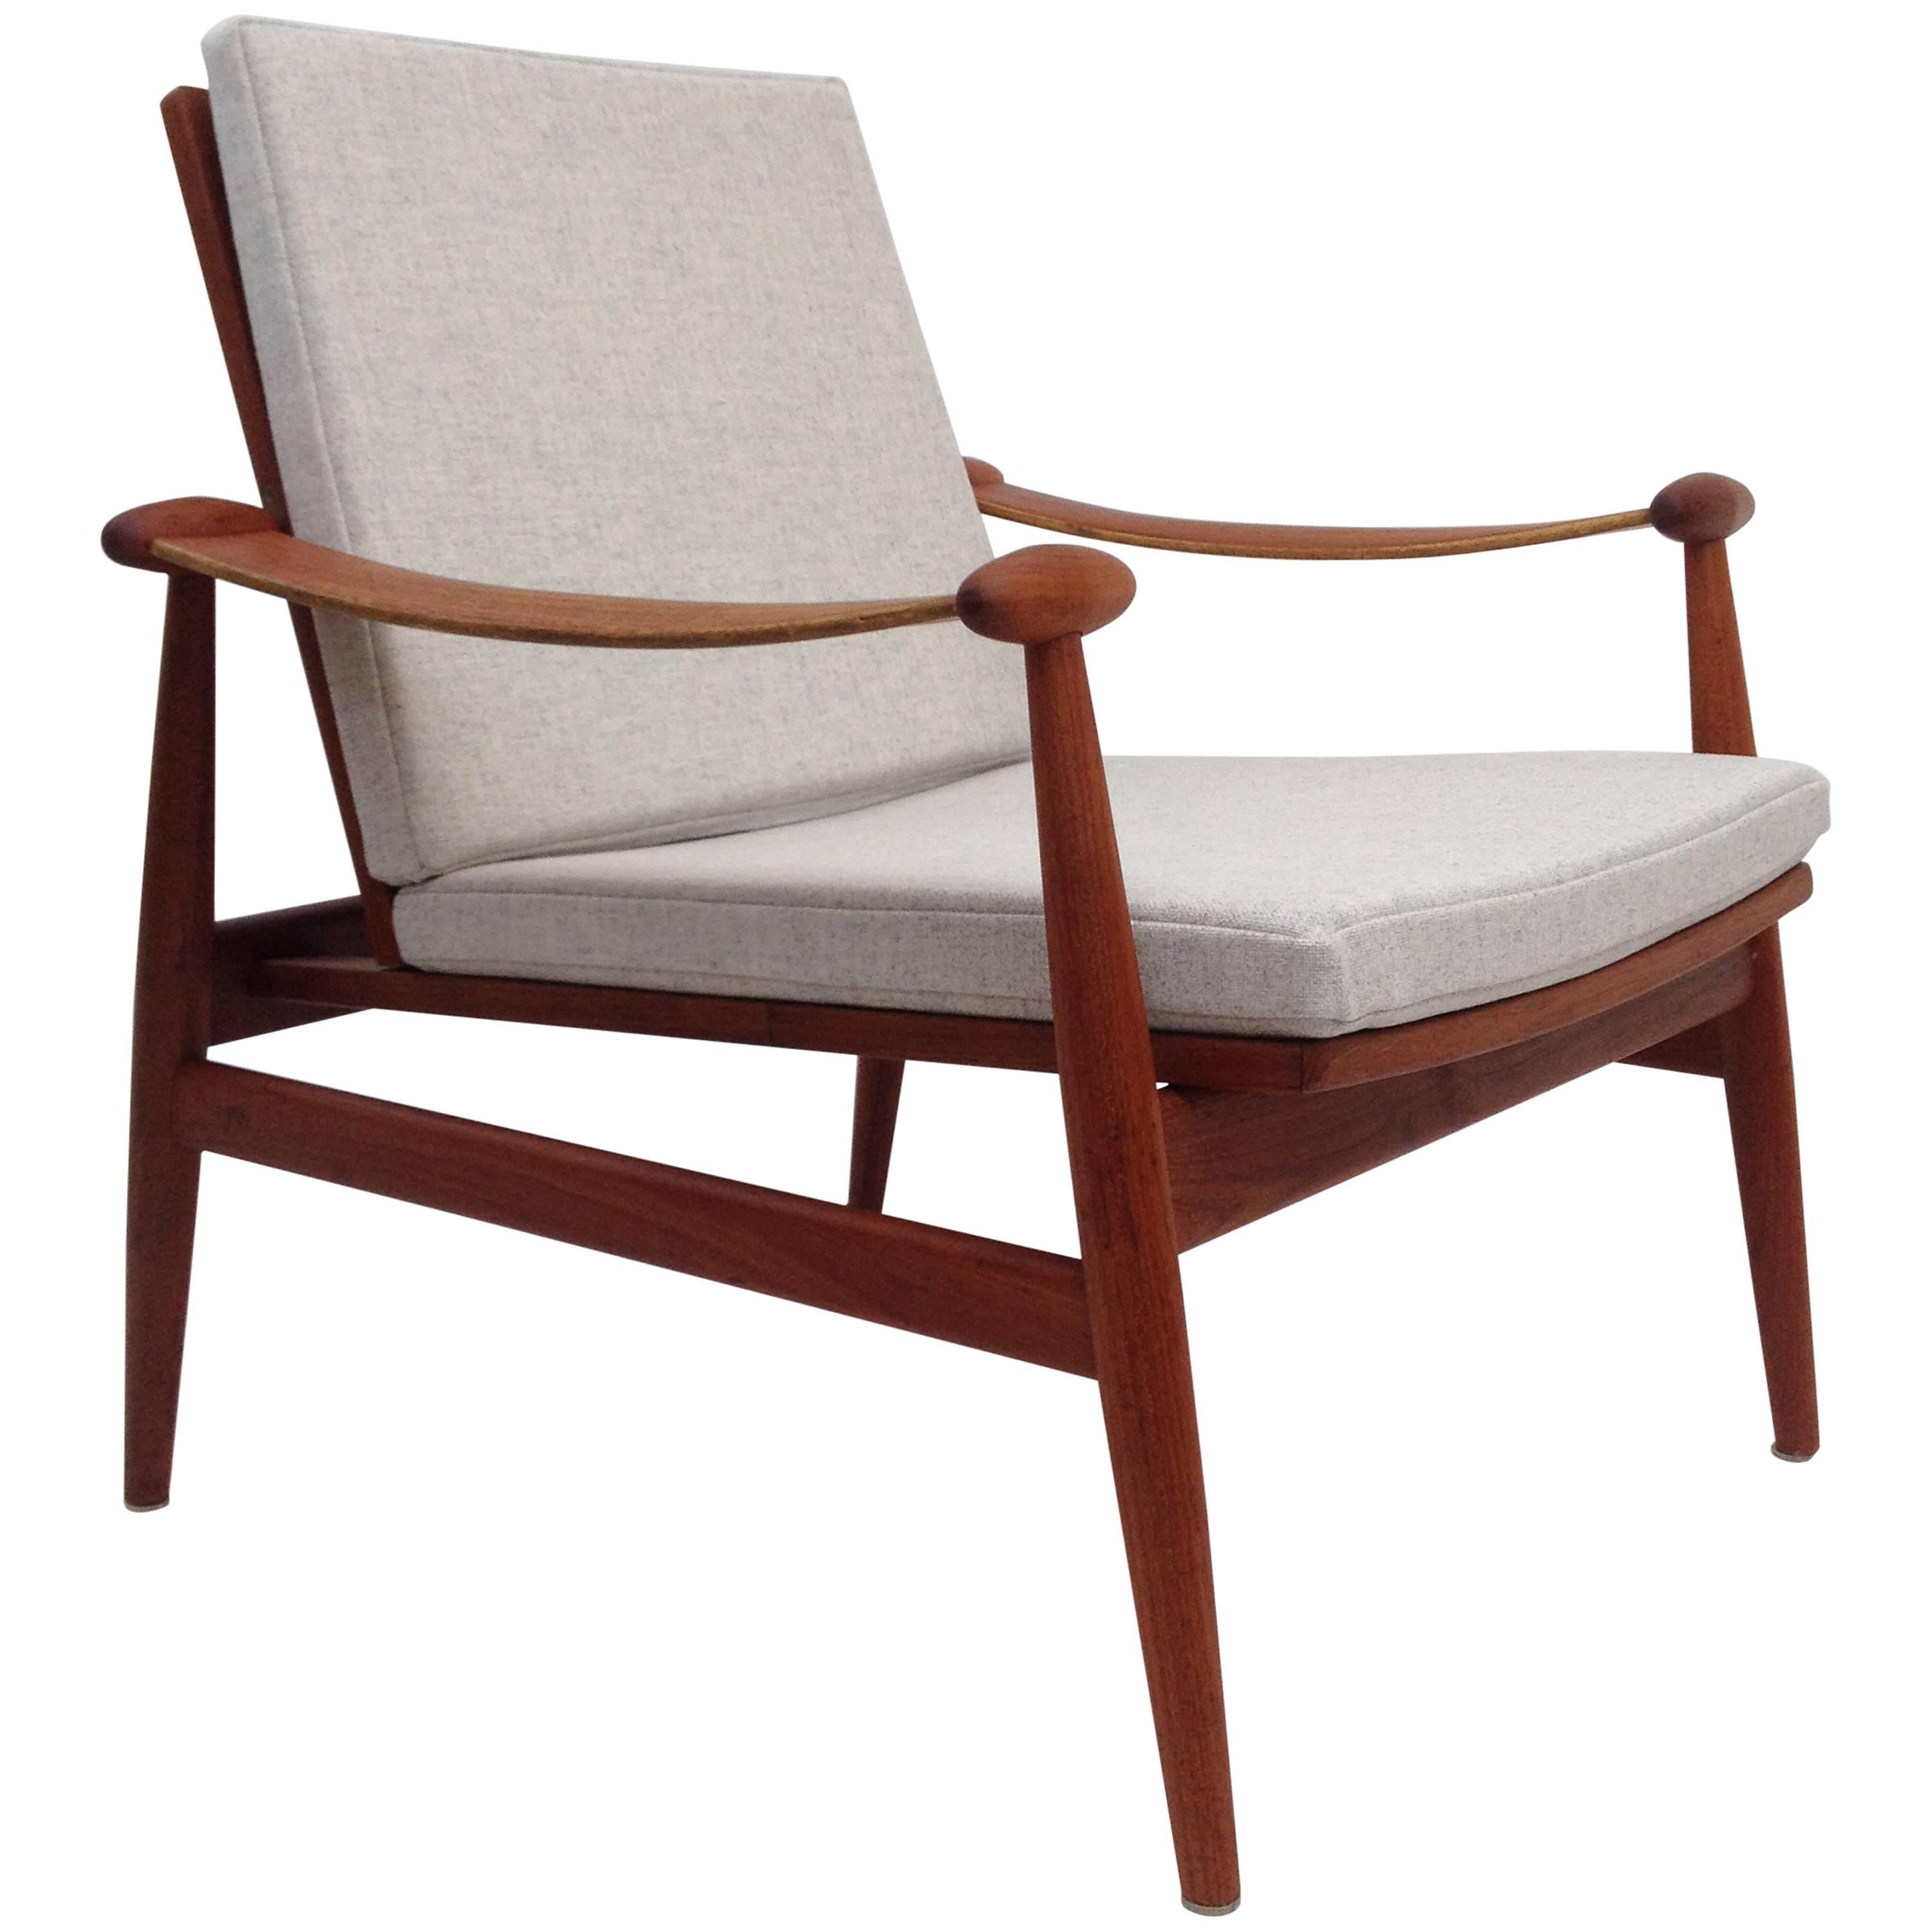 1950s Danish Teak Easy Chair Designed by Finn Juhl for France & Daverkosen For Sale